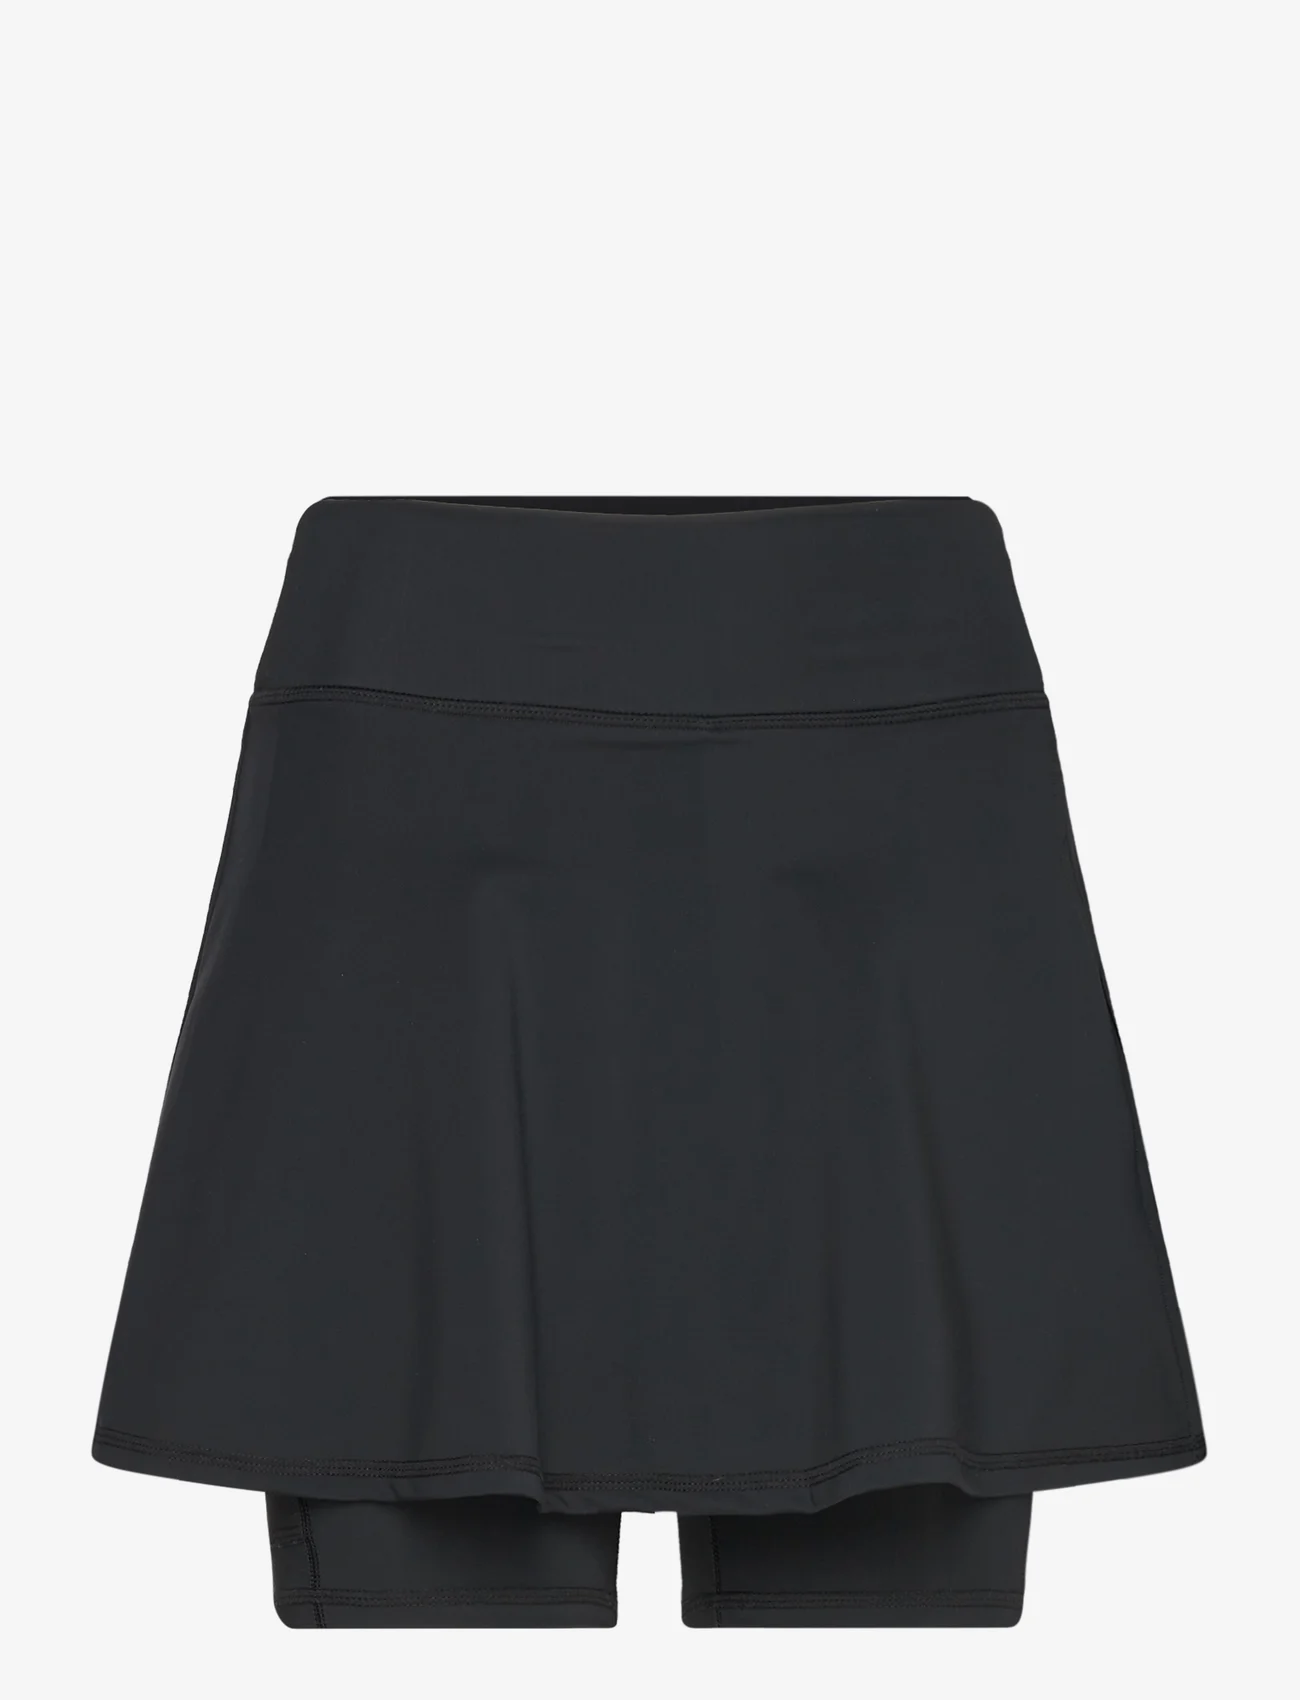 Only Play - ONPJAM-FAN-2 HW PCK SKORT - skirts - black - 0